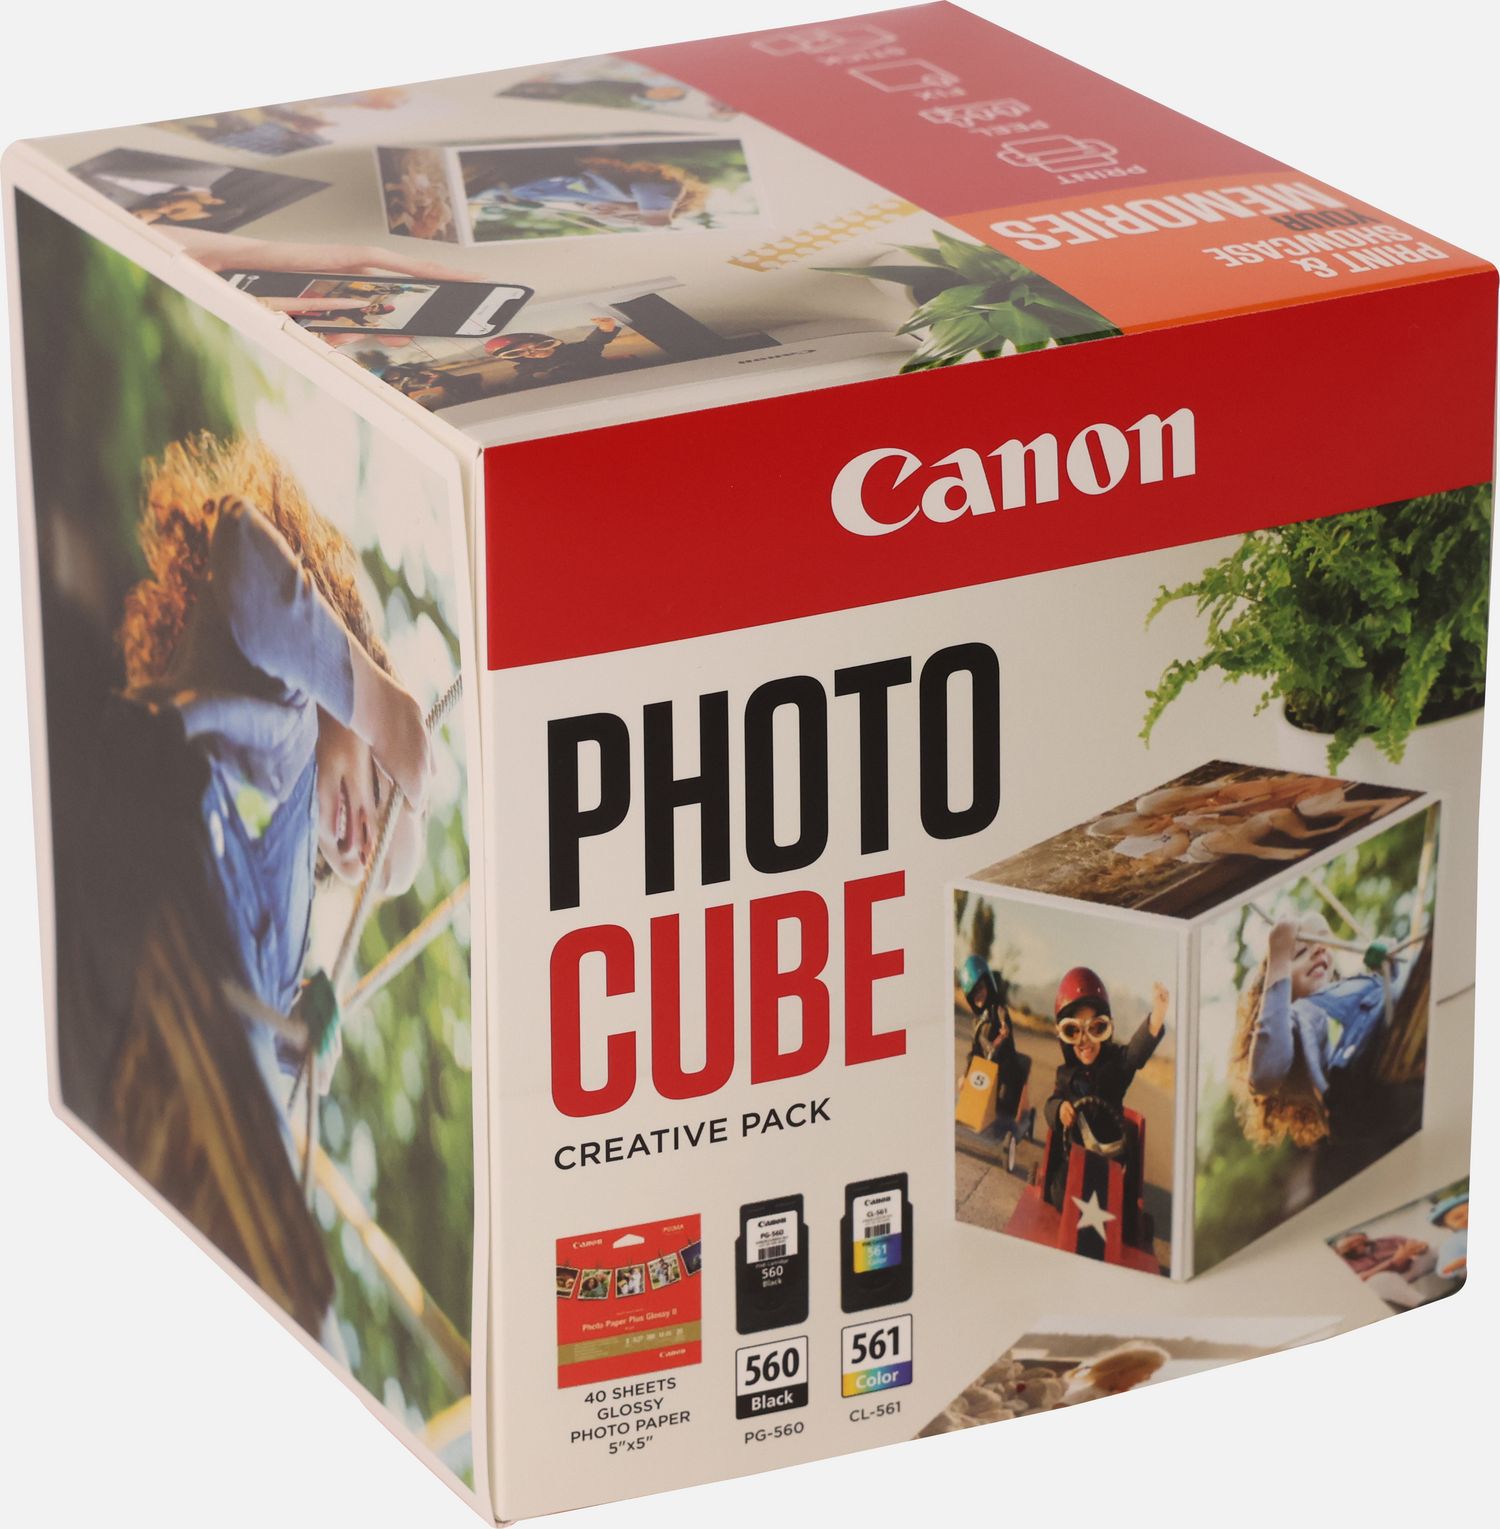 Coffret Canon Photo Cube, avec cartouches d'encre PG-560 et CL-561 et  papier photo glacé Extra II PP-201 13 × 13 cm (40 feuilles) - Pack créatif,  rose — Boutique Canon France